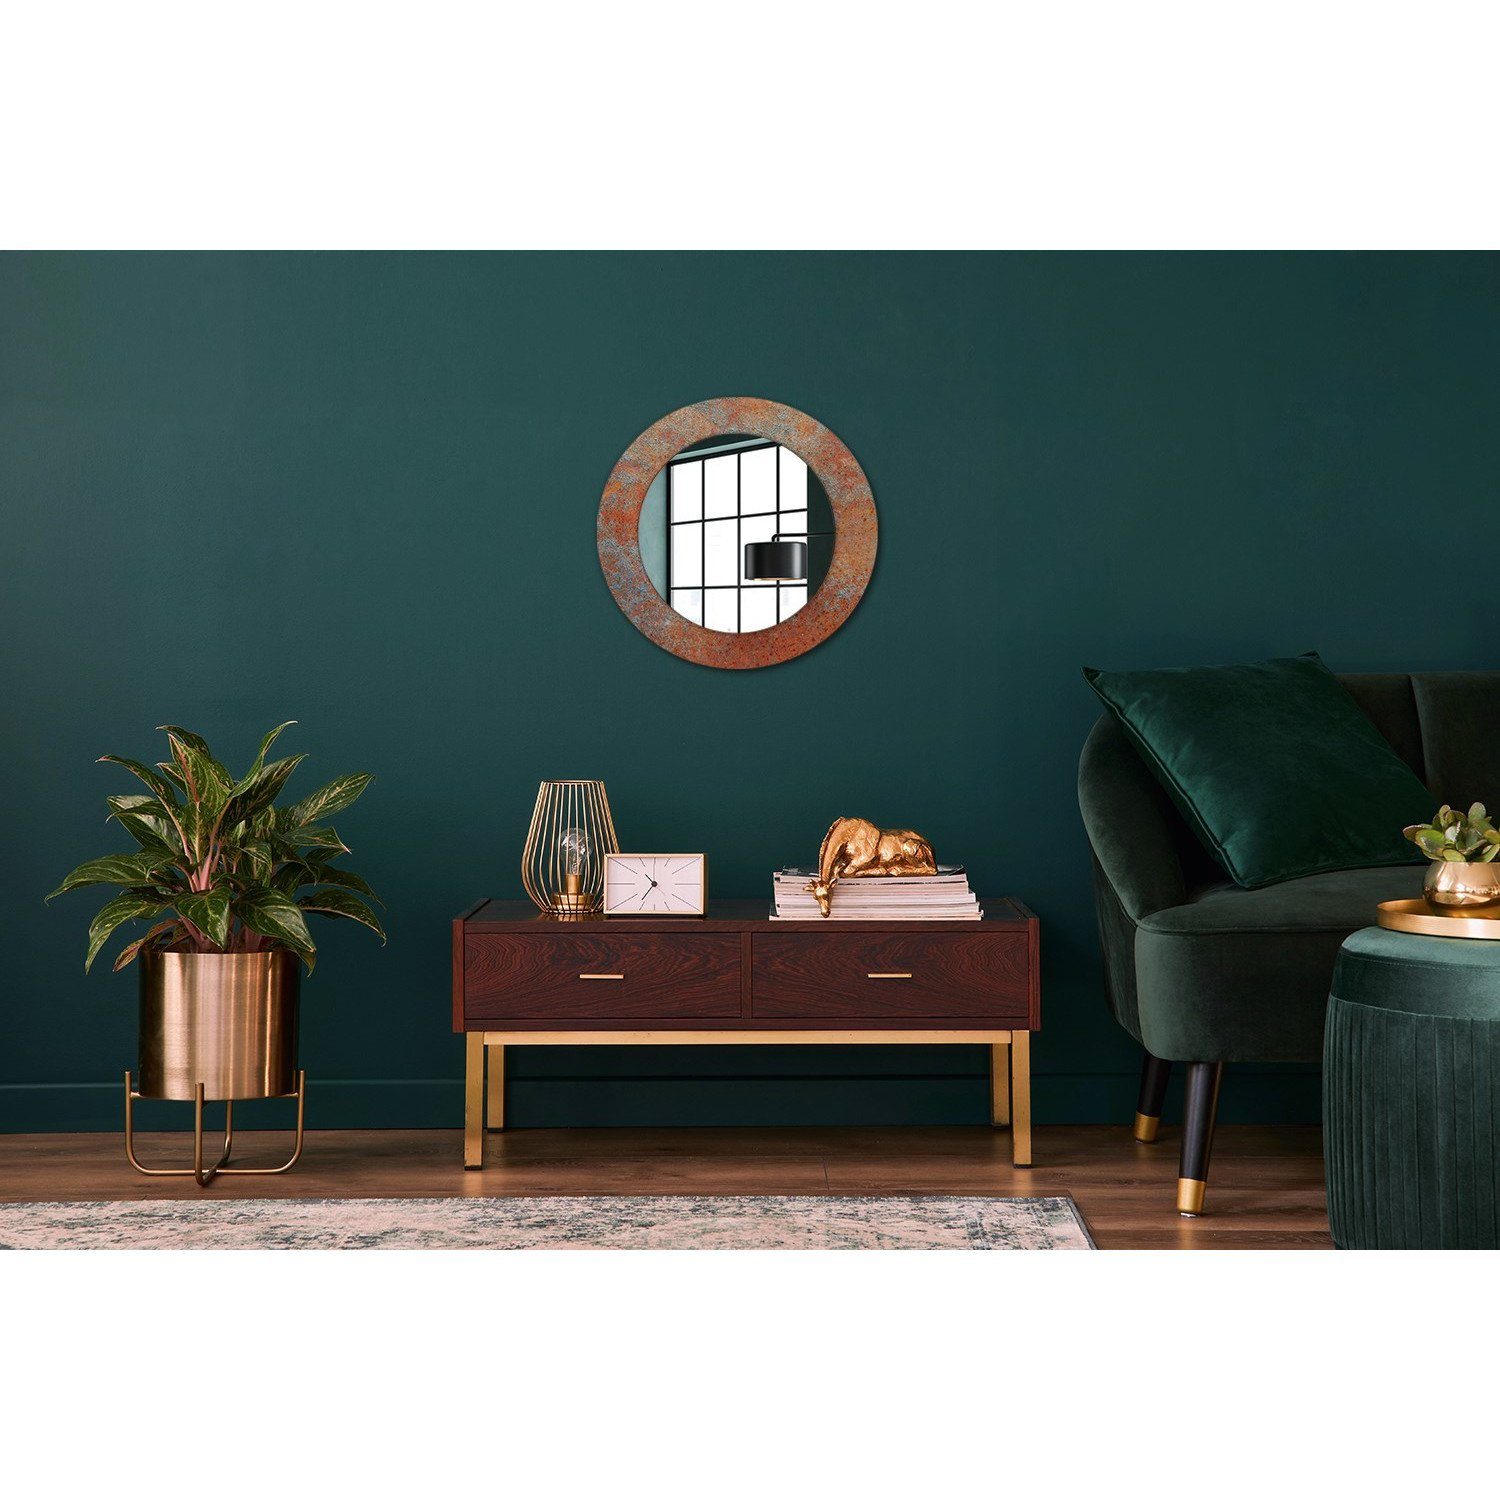 Rostig Rund: Spiegel Modern mit Wandmontage Wandspiegel Tulup Metall Spiegel Aufdruck Ø50cm